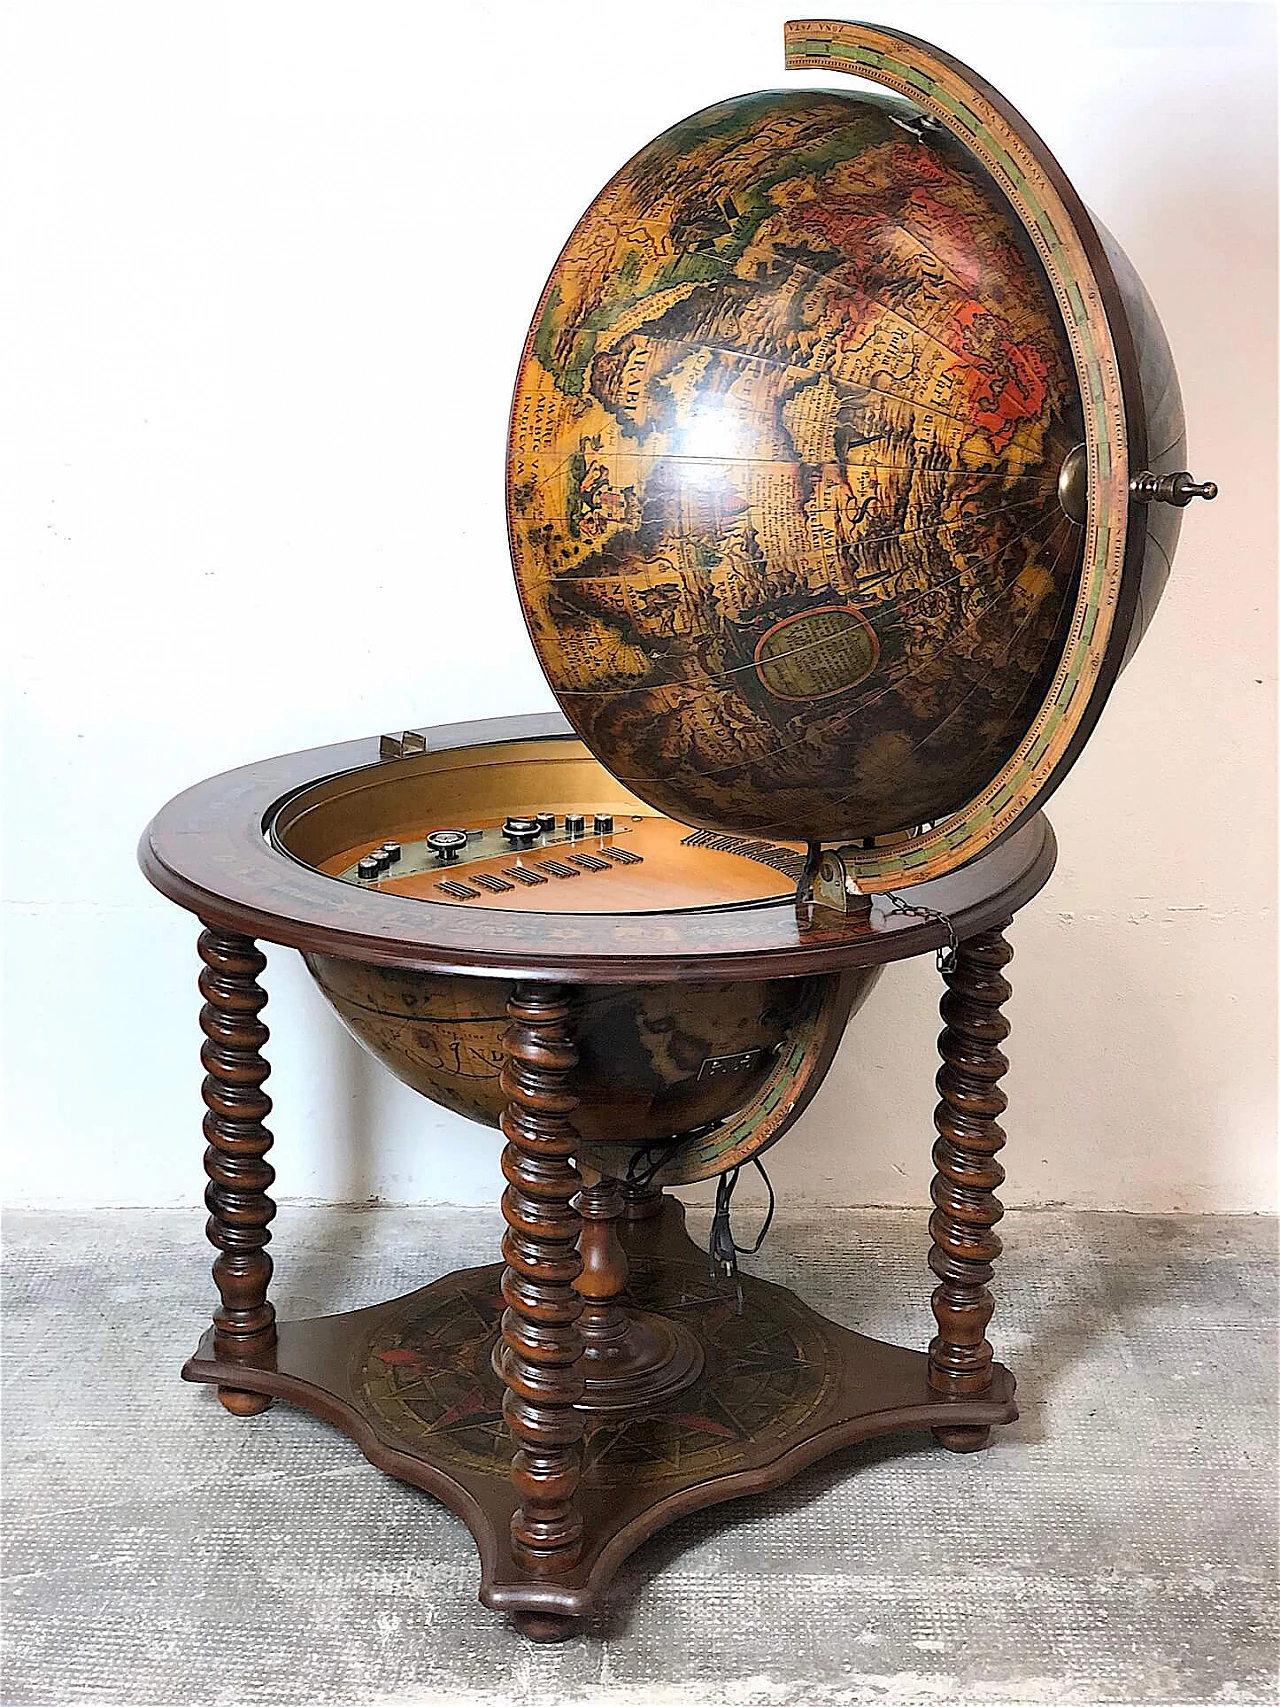 Wundersen globe-shaped television set, 1967 1367120